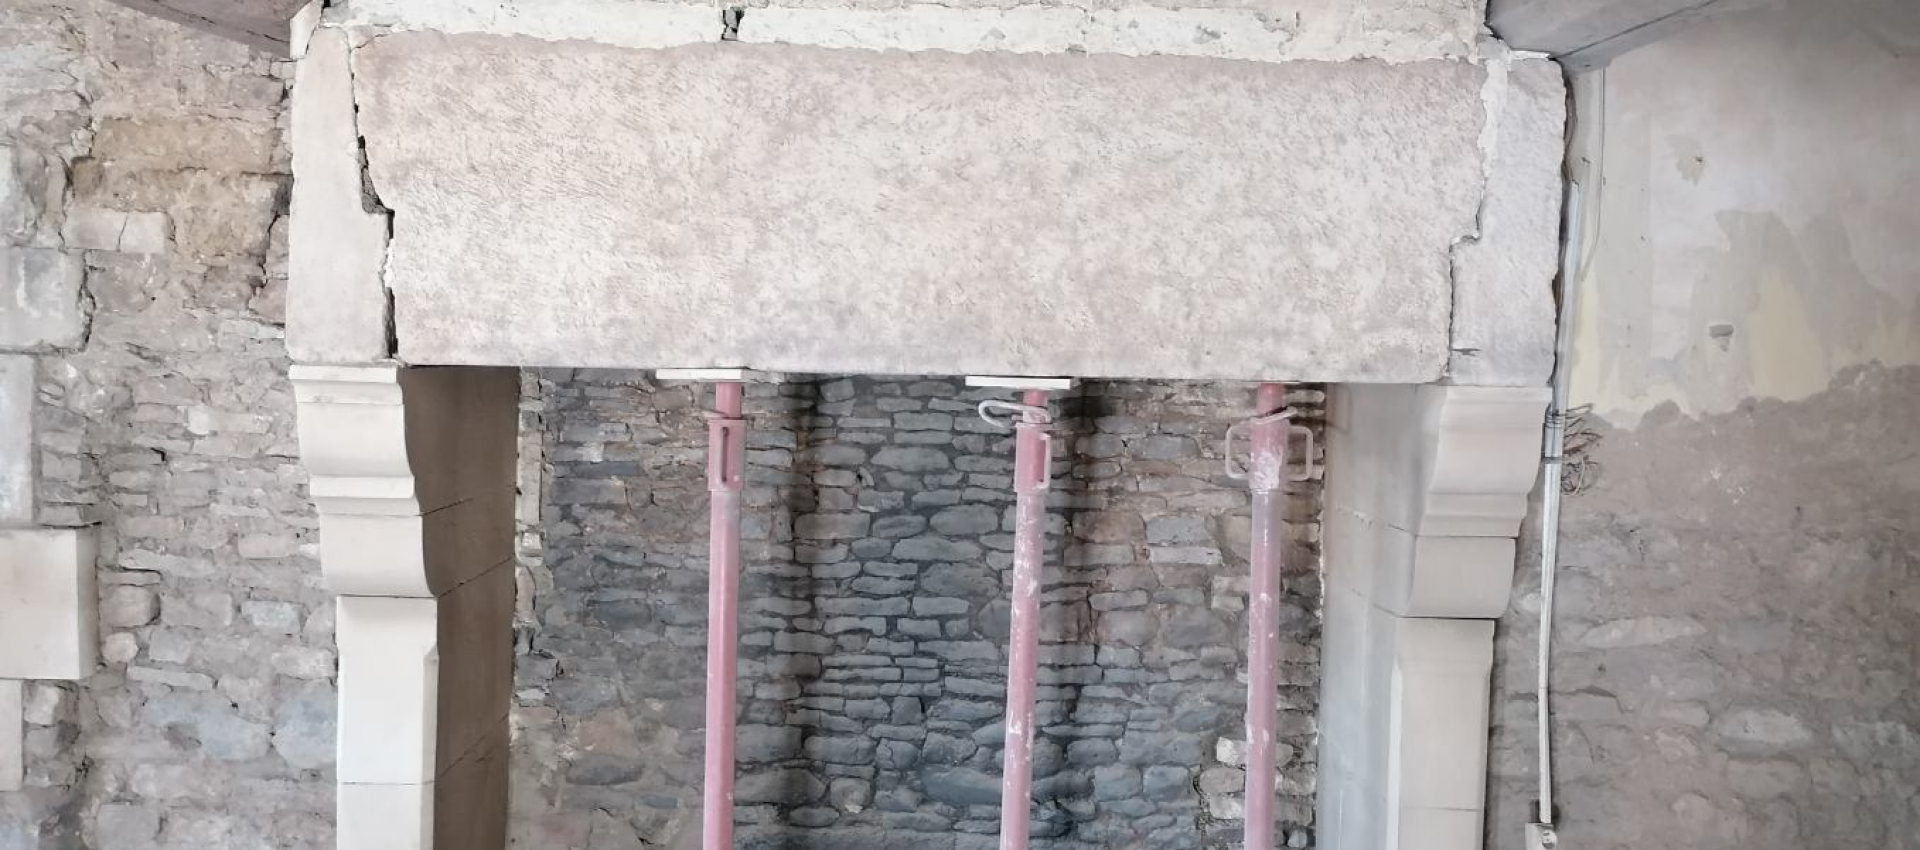 Aérogommage d'une cheminée monumentale